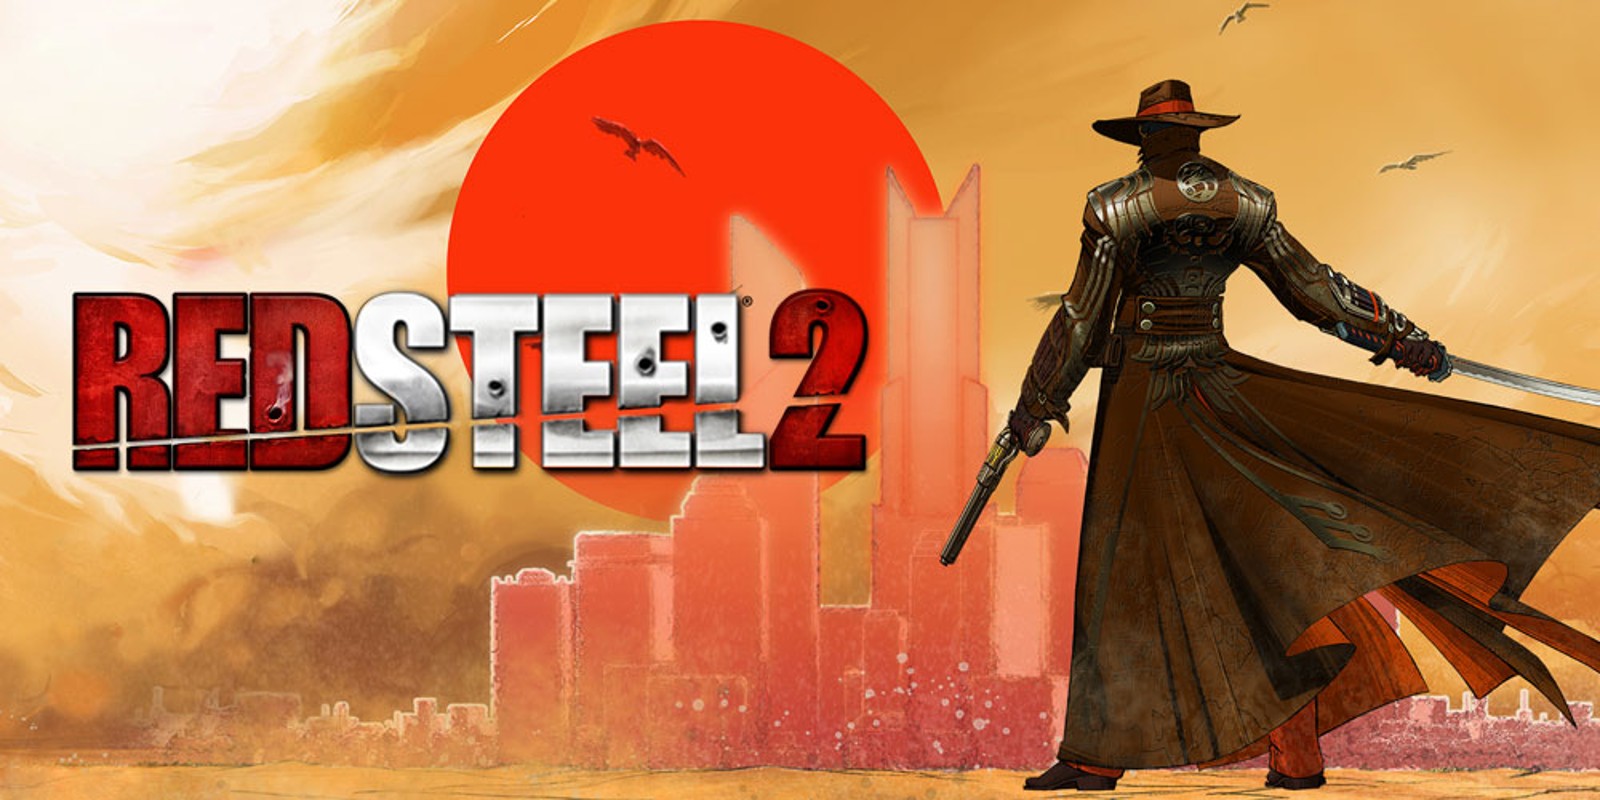 Red Steel 2 | Wii | Games | Nintendo